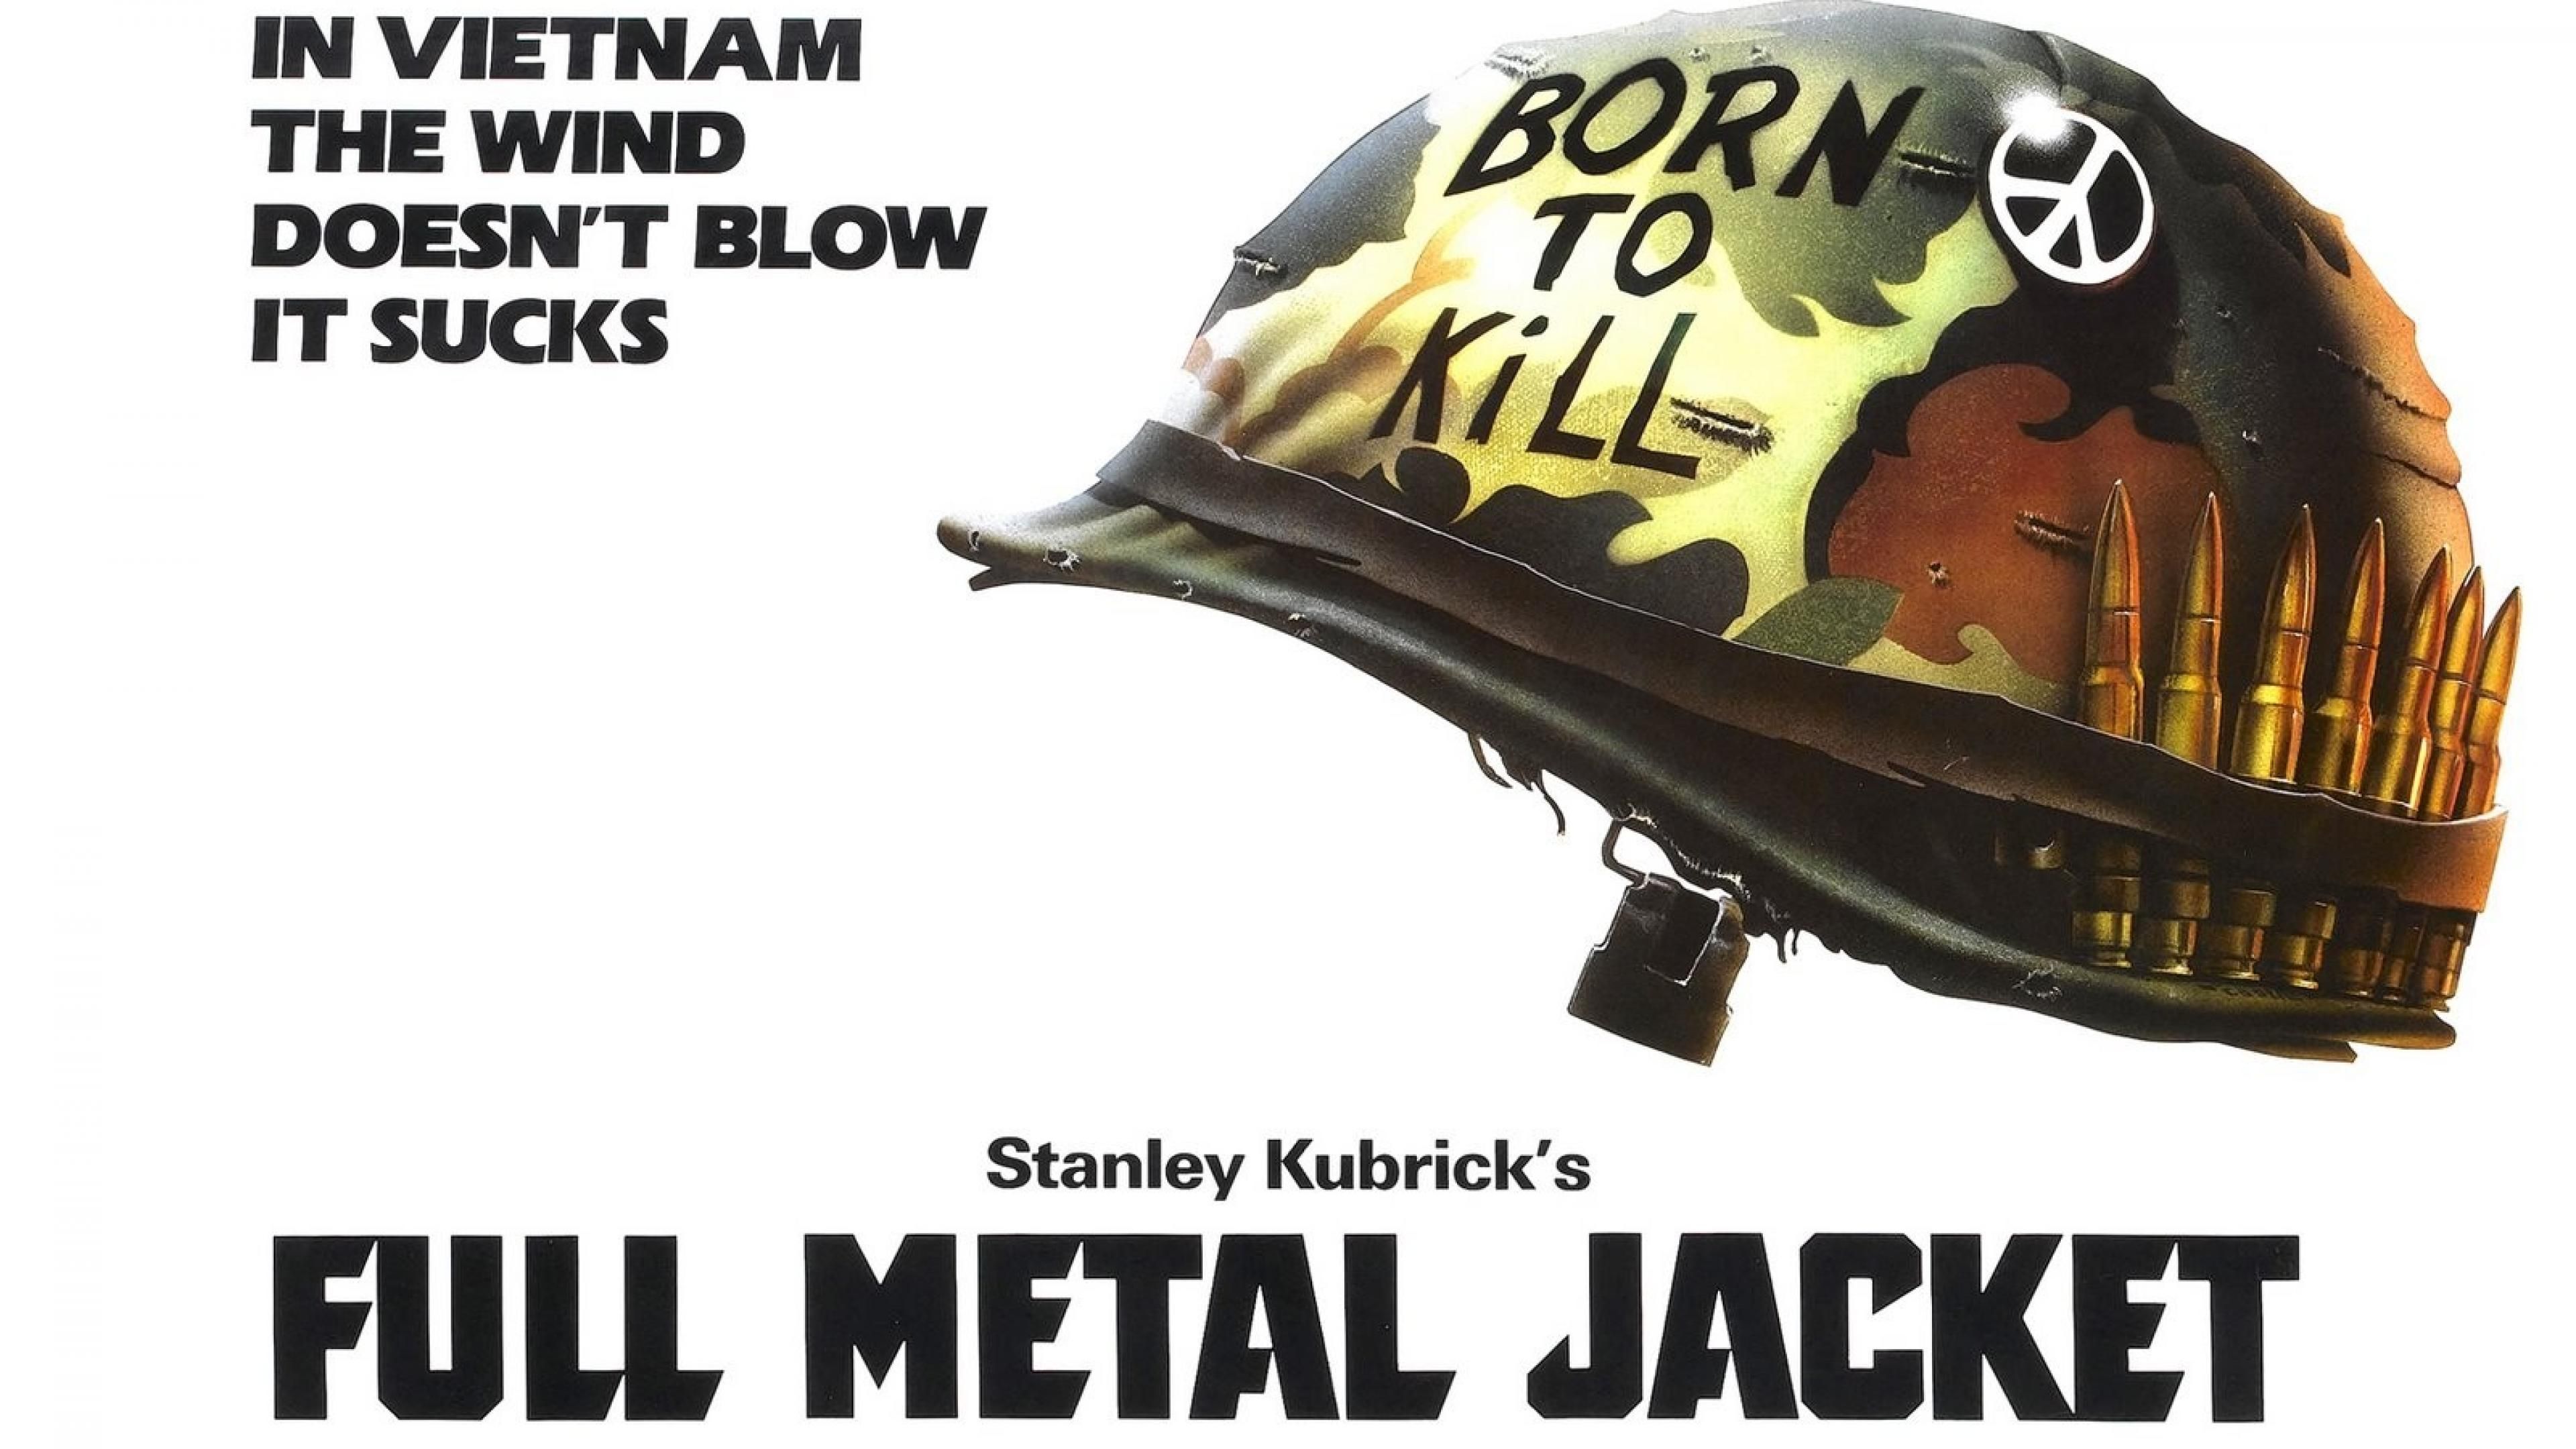 Full metal jacket stanley kubrick film movies best #aaHK